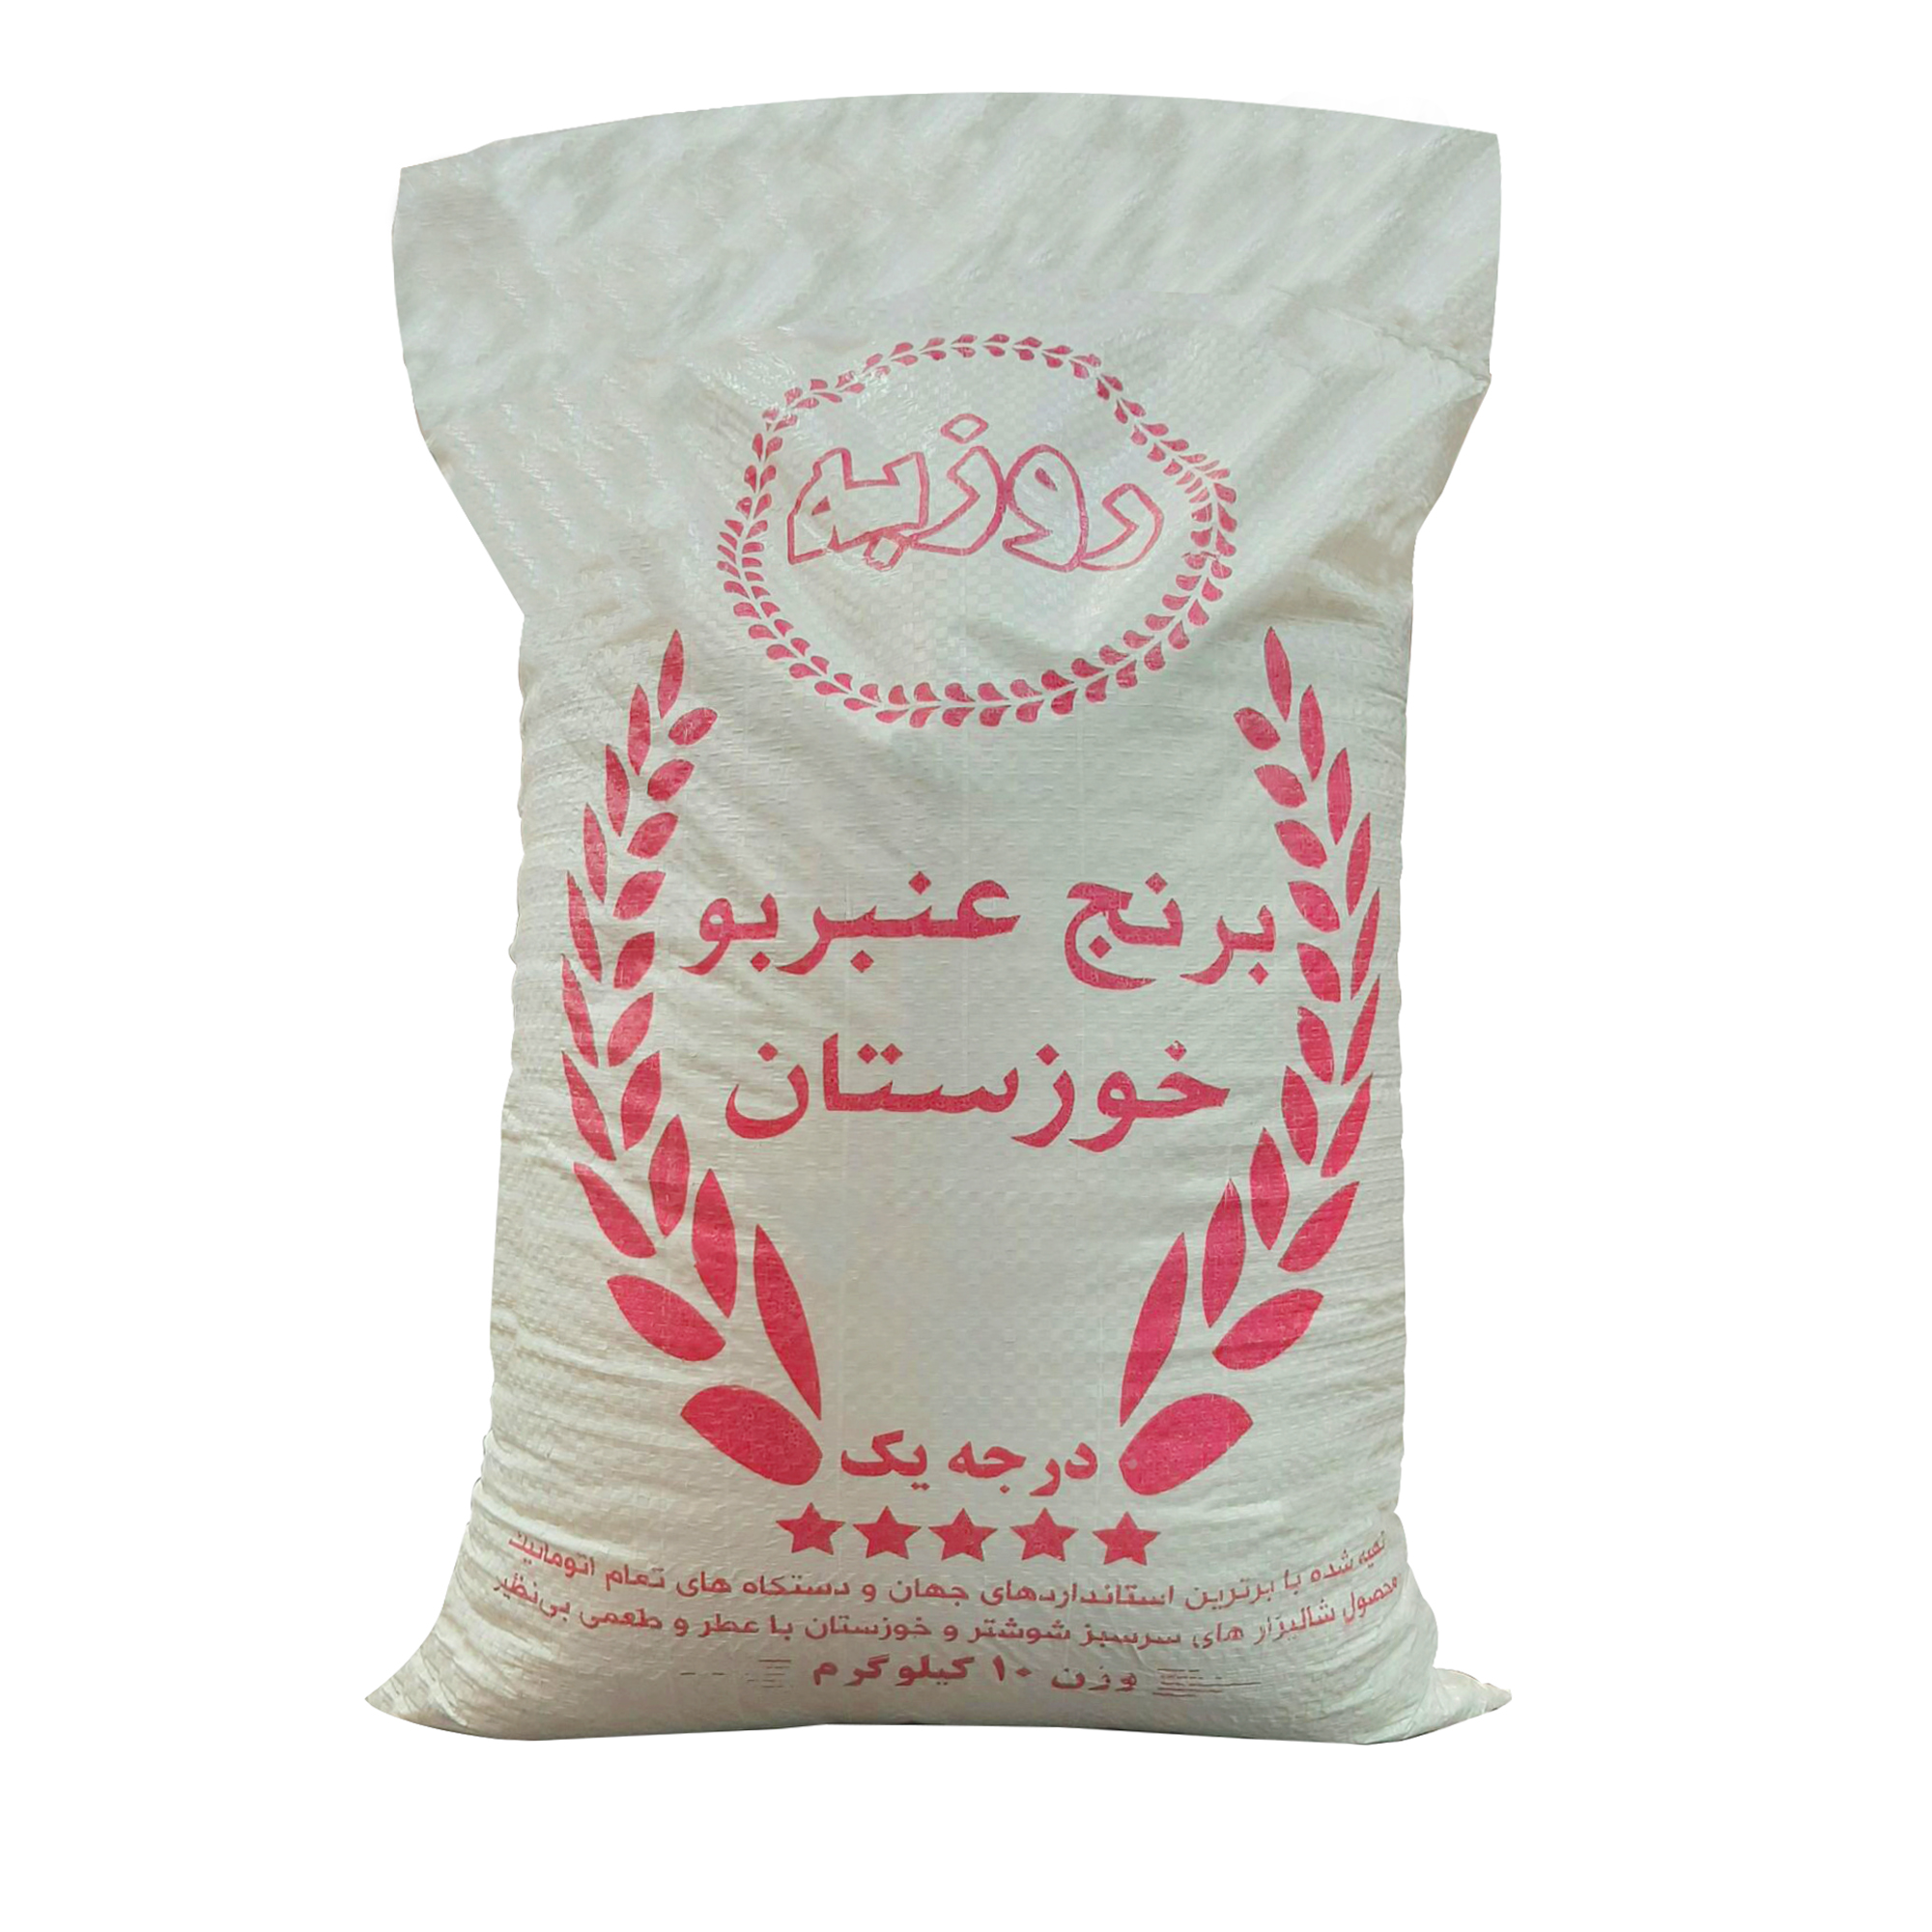 نکته خرید - قیمت روز برنج ایرانی عنبر بو عطری روزبه - 10 کیلوگرم خرید